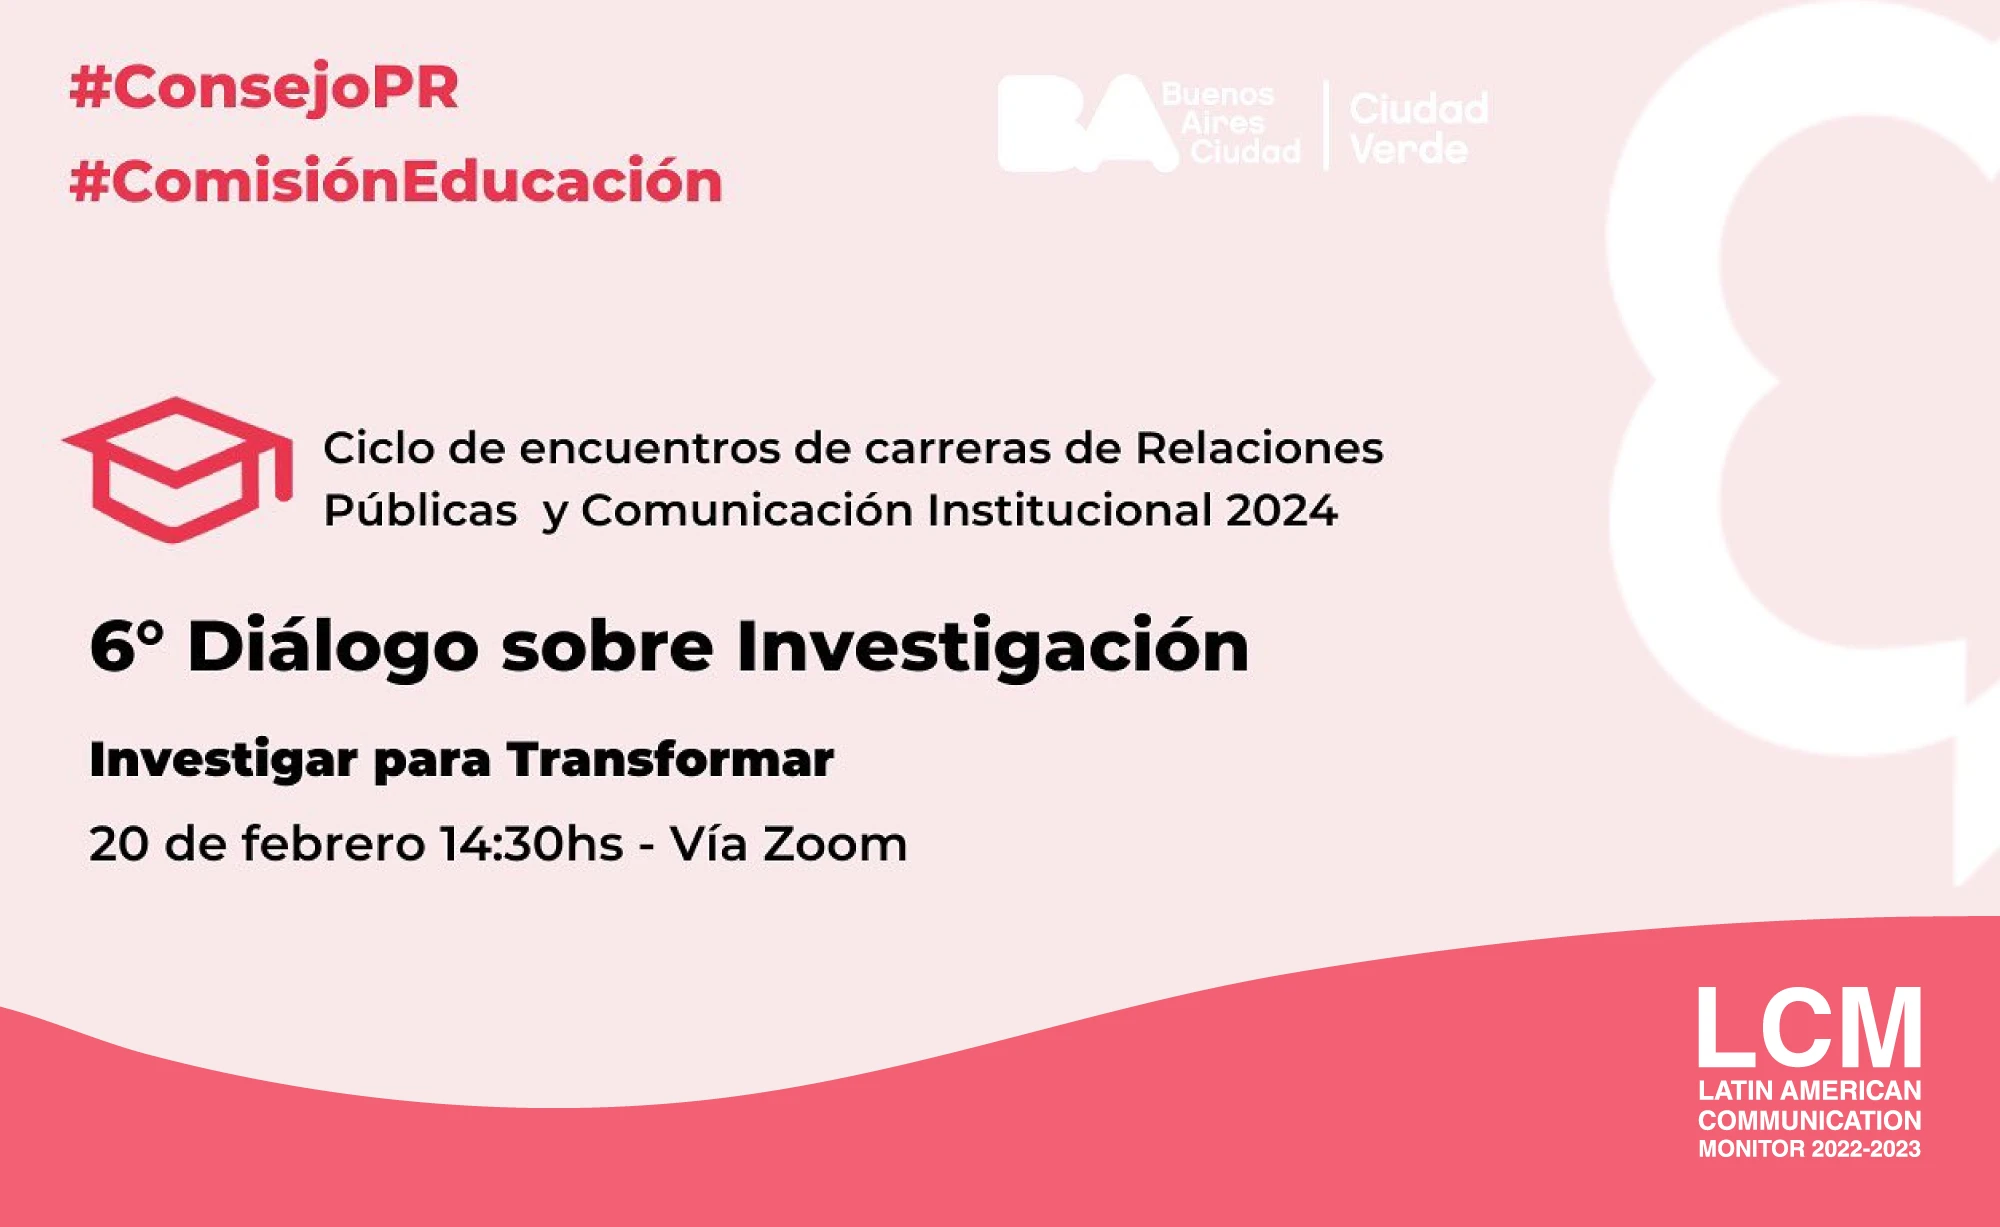 Presentación del LCM en el 6º Diálogo sobre Investigación del Consejo Profesional de Relaciones Públicas de Argentina